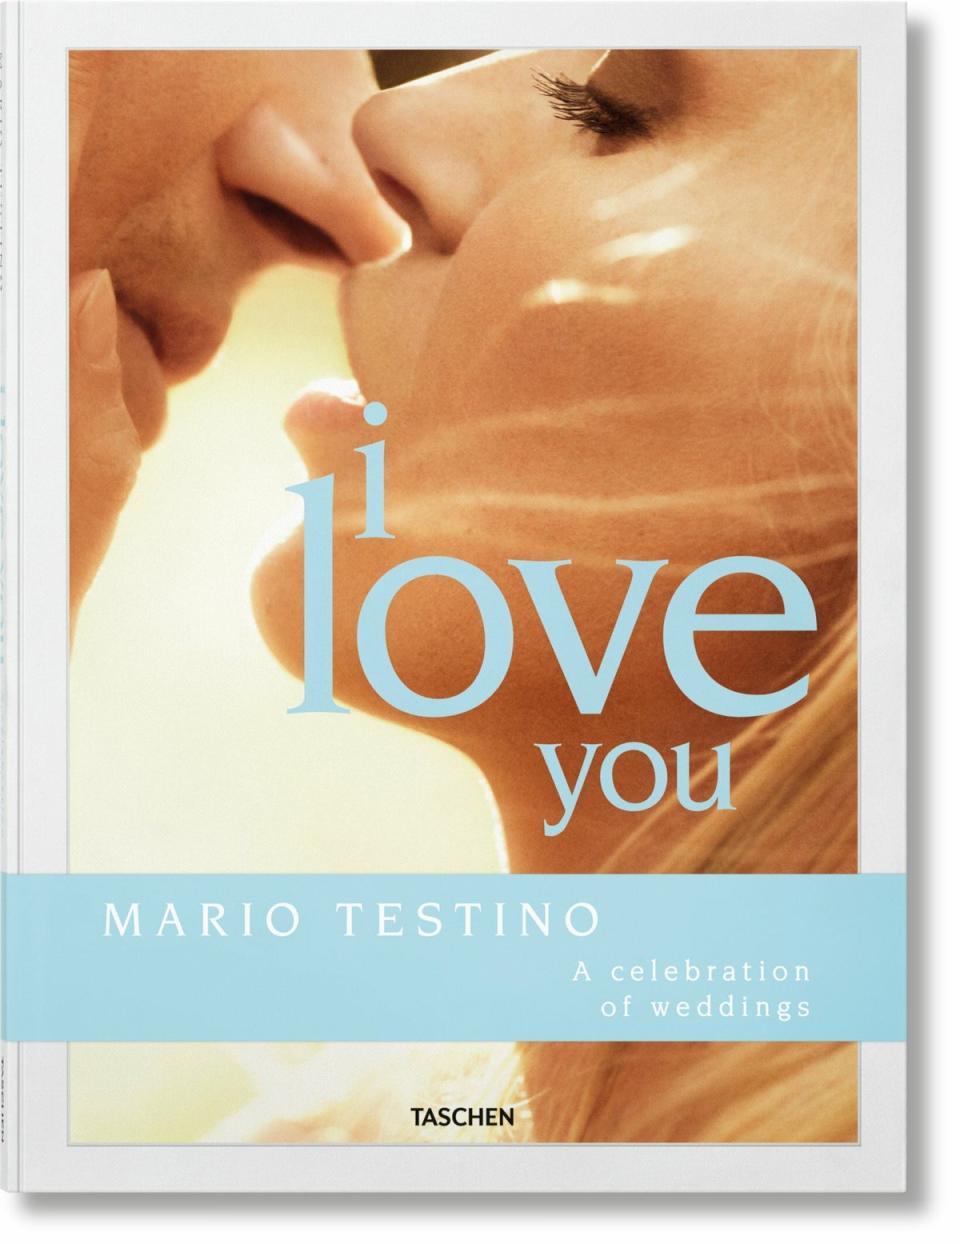 Mario Testino, I Love You (Mario Testino/Taschen)